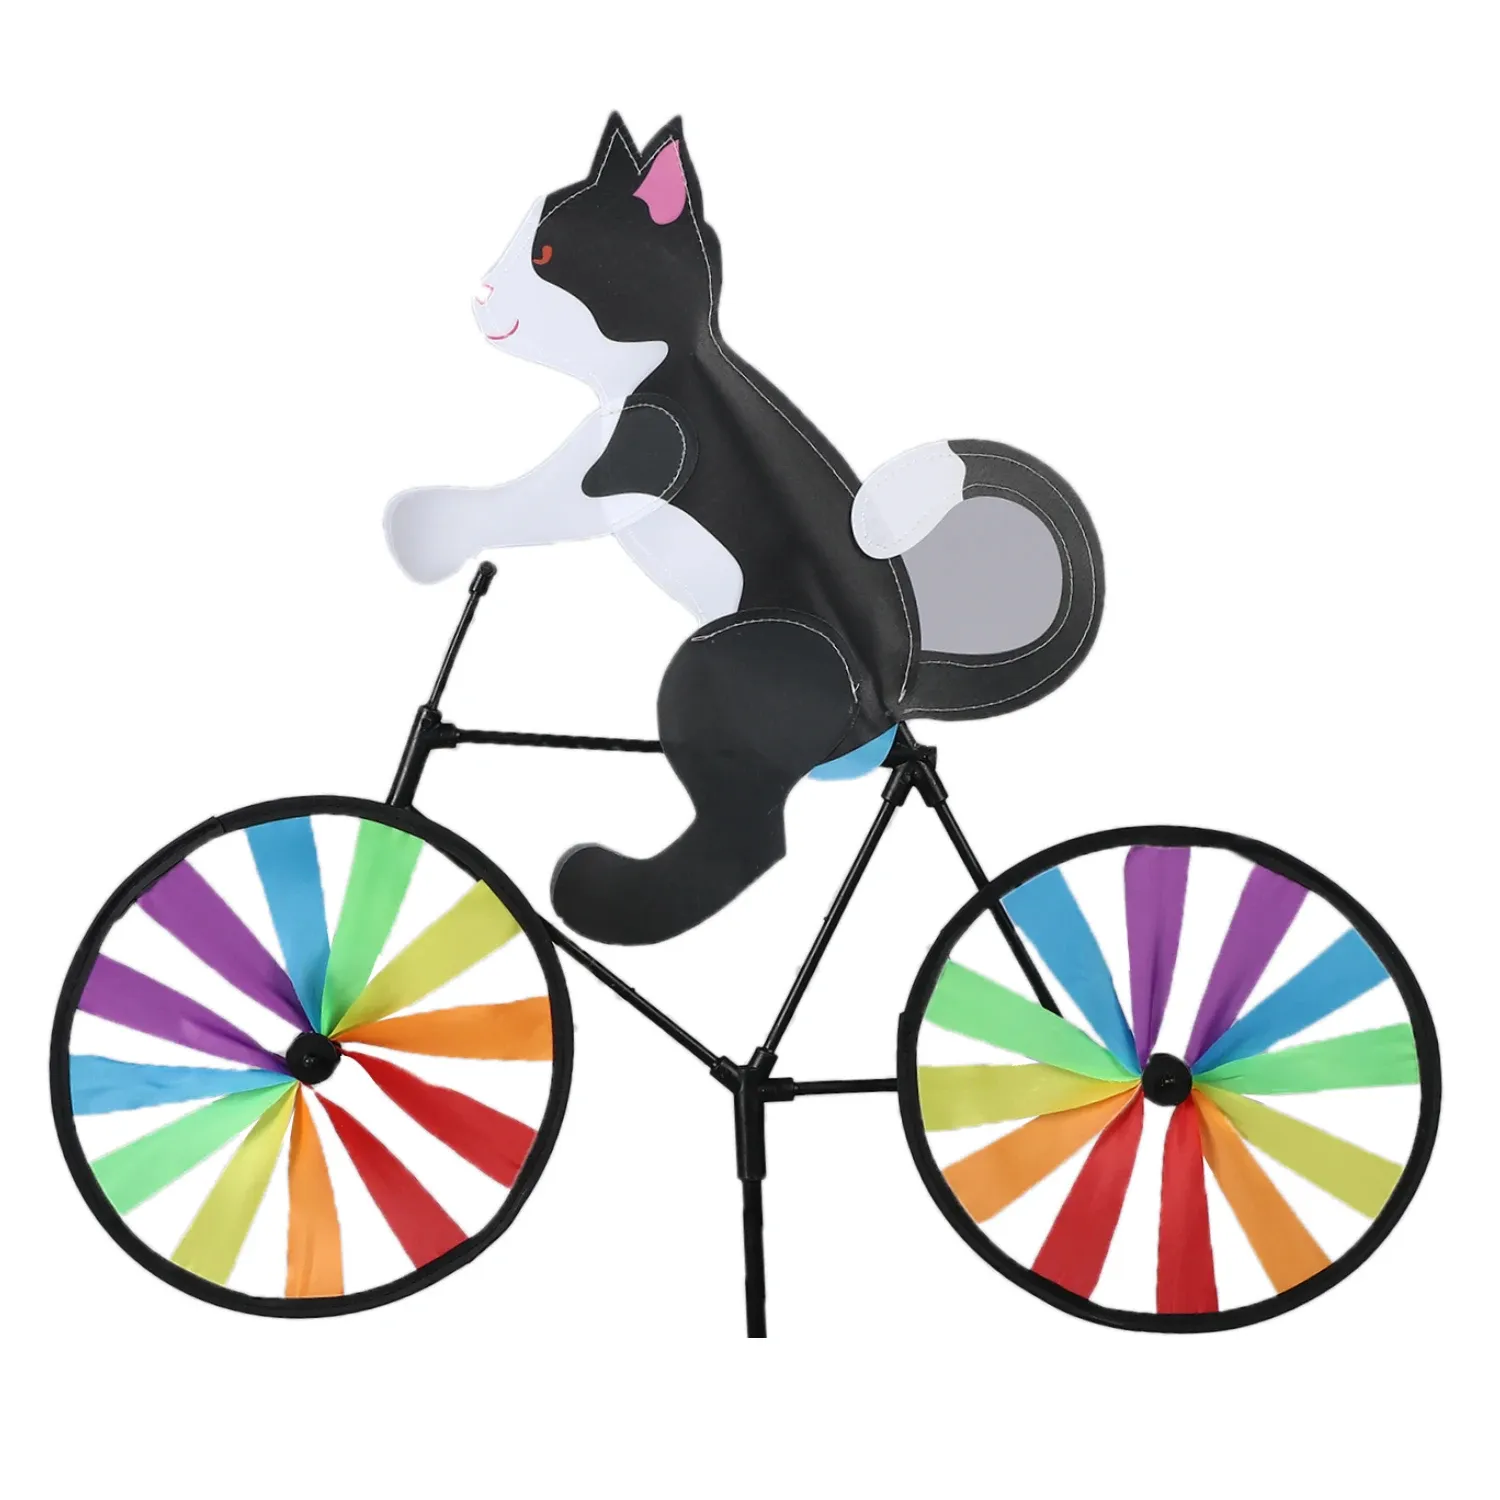 레인보우 스피너 풍차 고양이 개 호랑이 자전거에 DIY 자전거 바람 스피너 whirligig 정원 잔디 장식 가제트 어린이 장난감